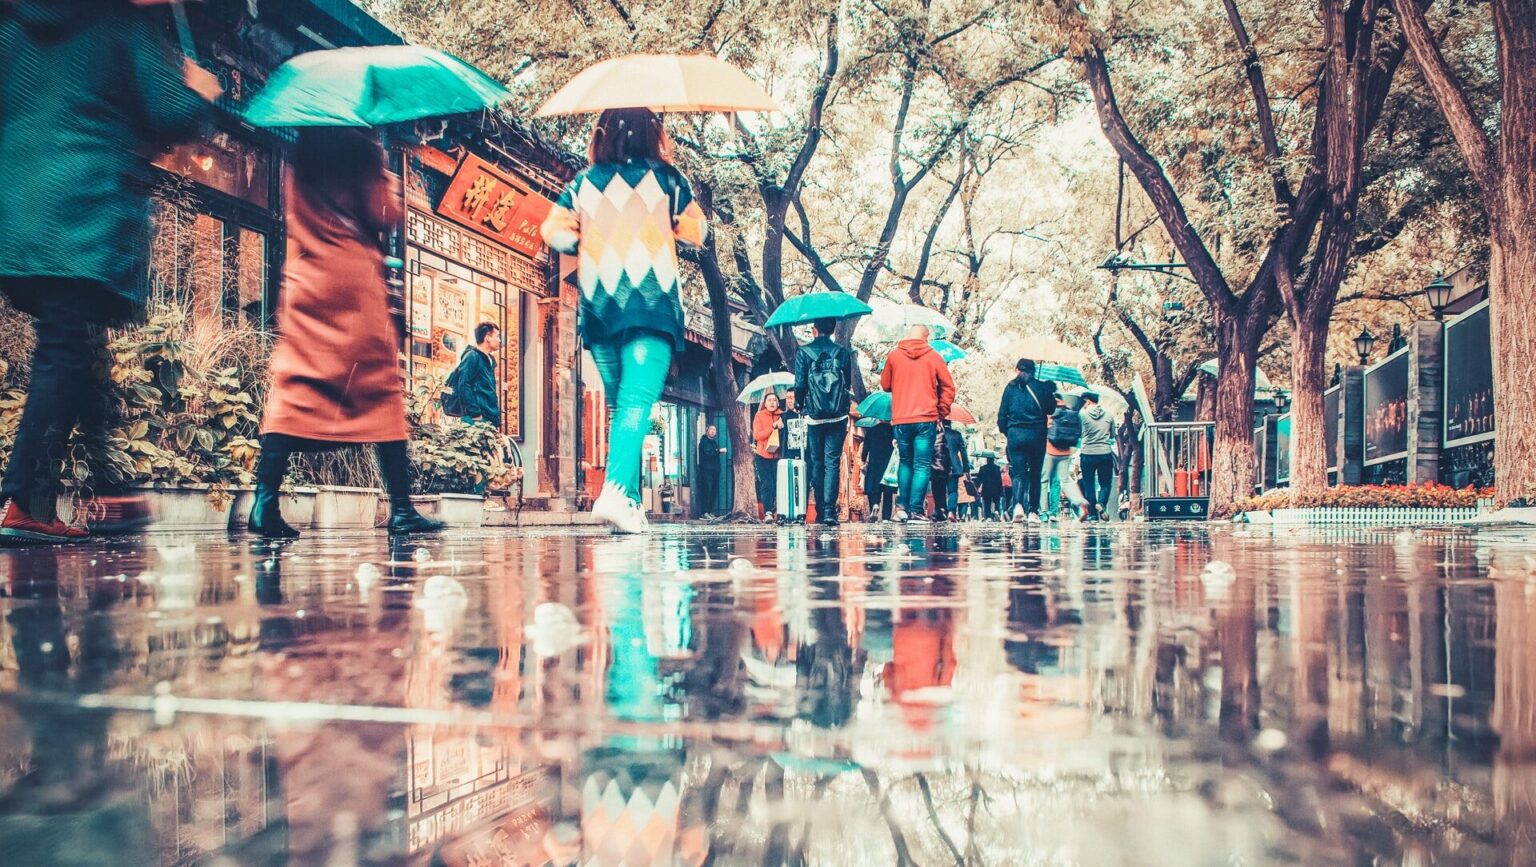 傘をさしている人たちが町の中を歩いている